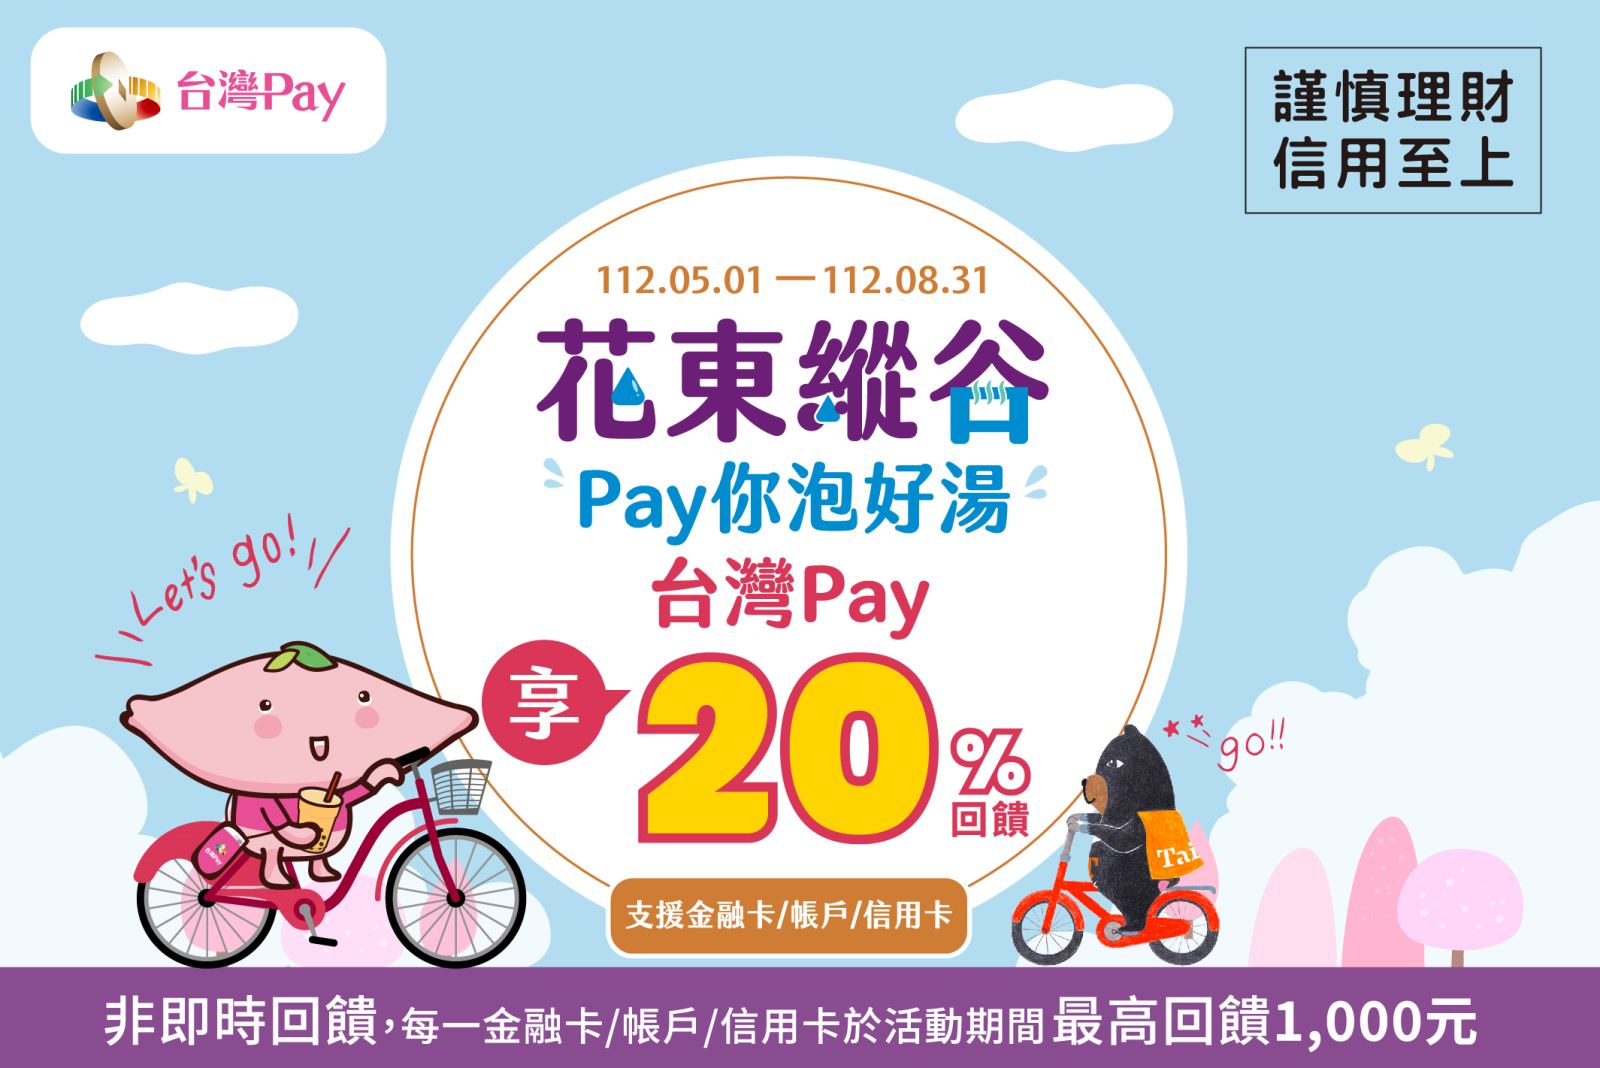 以「台灣Pay」QR Code掃碼支付，單筆消費不限金額可享20%現金回饋，每一金融卡/帳戶/信用卡於活動期間最高回饋新臺幣1,000元為限